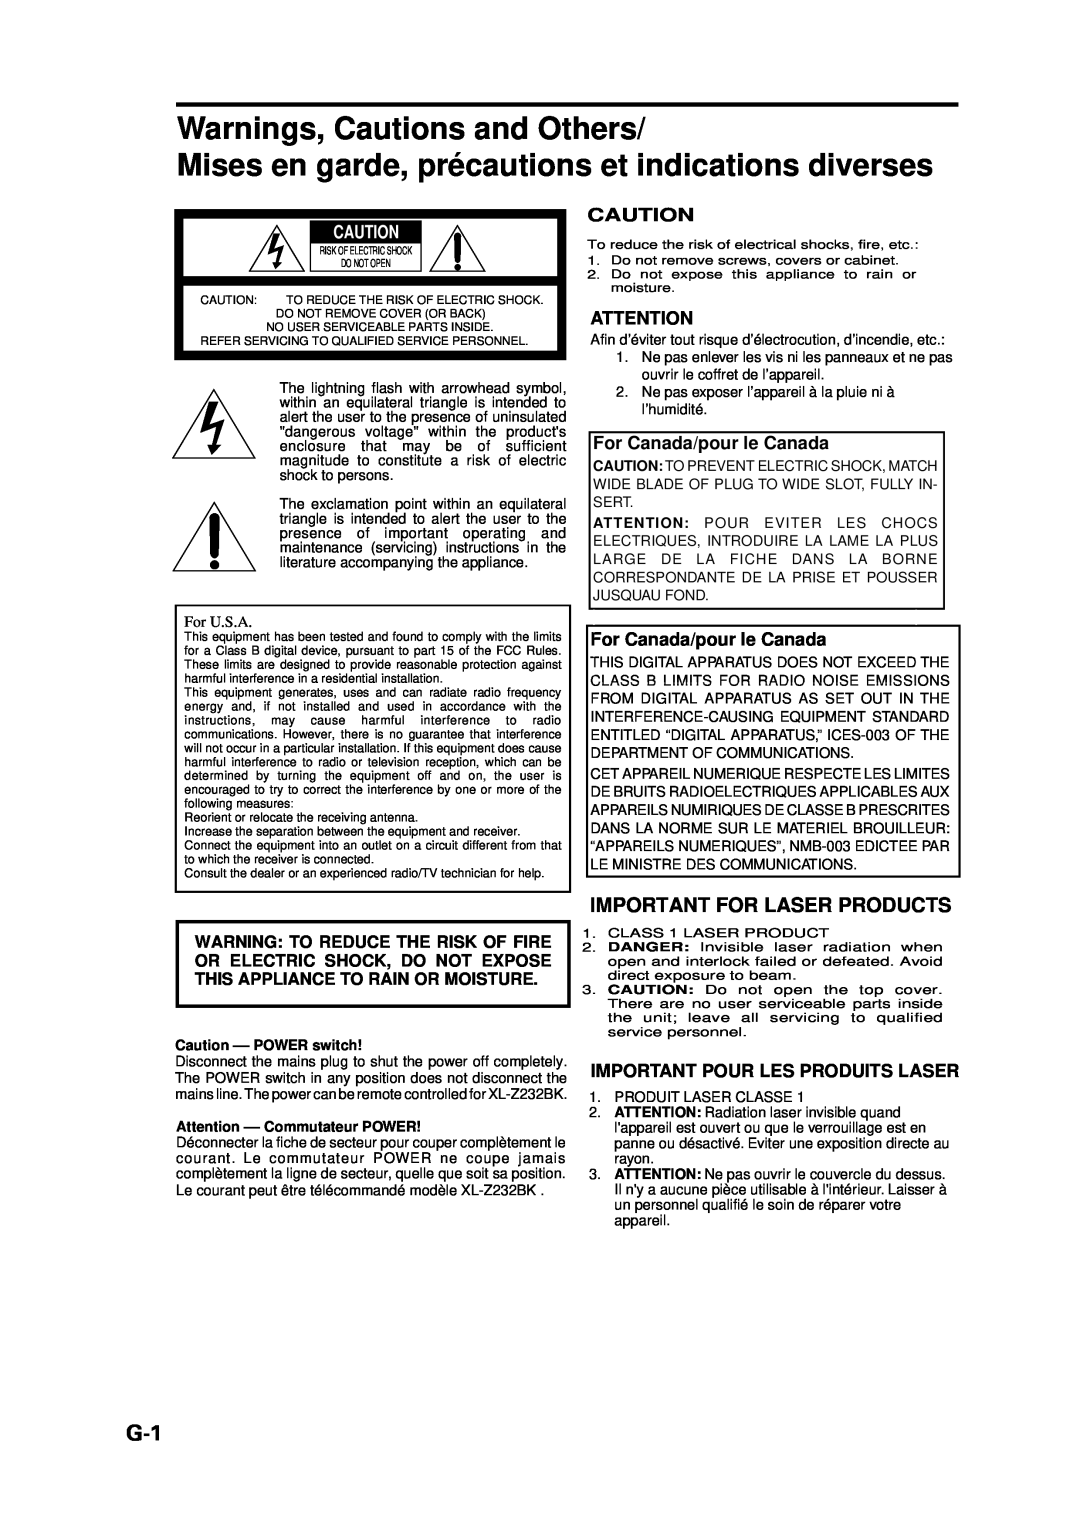 JVC XL-Z232BK, XL-Z132BK manual Important For Laser Products, For Canada/pour le Canada, Important Pour Les Produits Laser 